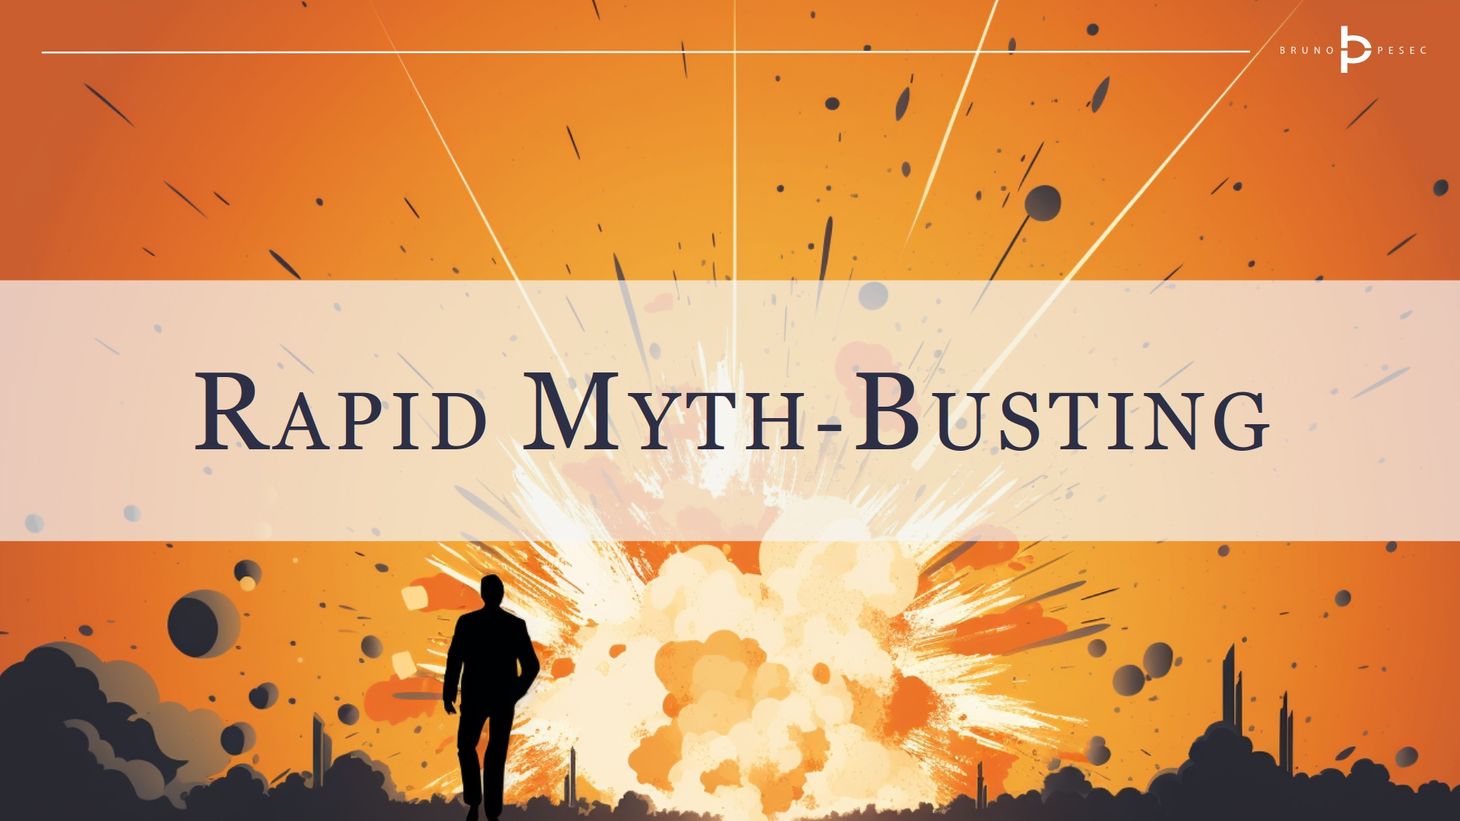 Rapid myth-busting